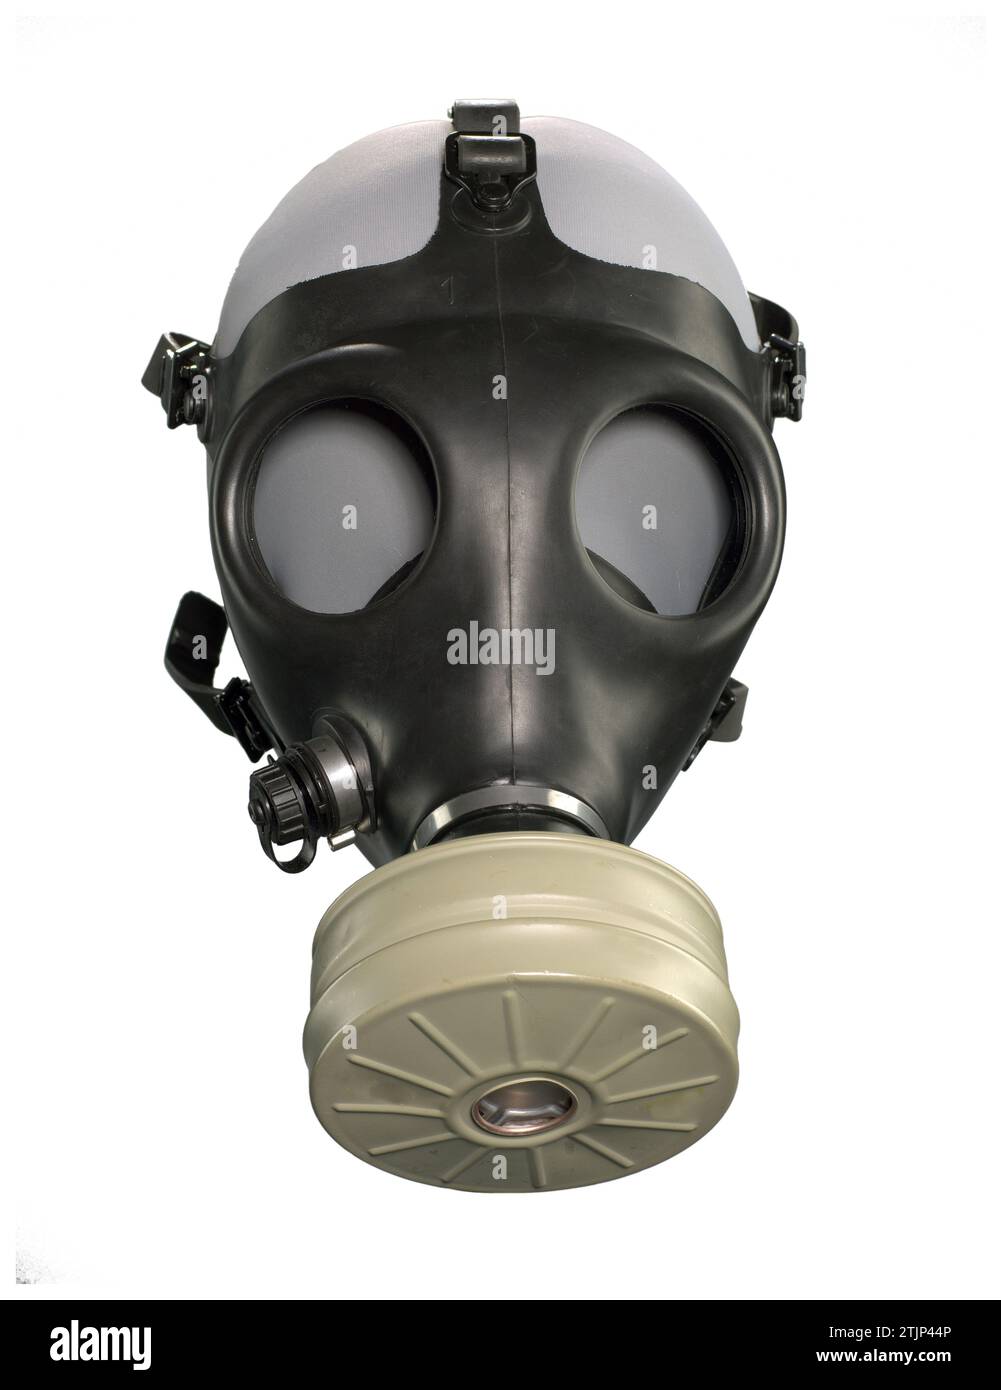 Máscara de gas hecha por Shalon Chemical Industries Ltd. Modelo adulto 4A1. Nuclear, Biológico y Químico (NBC), negro, máscara de gas de goma, con un tipo 80, cartucho de filtro NBC. La máscara tiene 5 correas de cabeza con hebillas de plástico que aseguran la máscara en el usuario detrás de la cabeza, un sello interior, 2 lentes de vista de plástico asegurados a la máscara con tornillos, y un voicemitor de plástico unido a la taza de la nariz. Hay un puerto de hidratación de plástico en el lado derecho de la versión optimizada de la máscara de una fotografía de un objeto en la Colección del Museo Nacional Smithsonian de Historia y Cultura Afroamericana Foto de stock